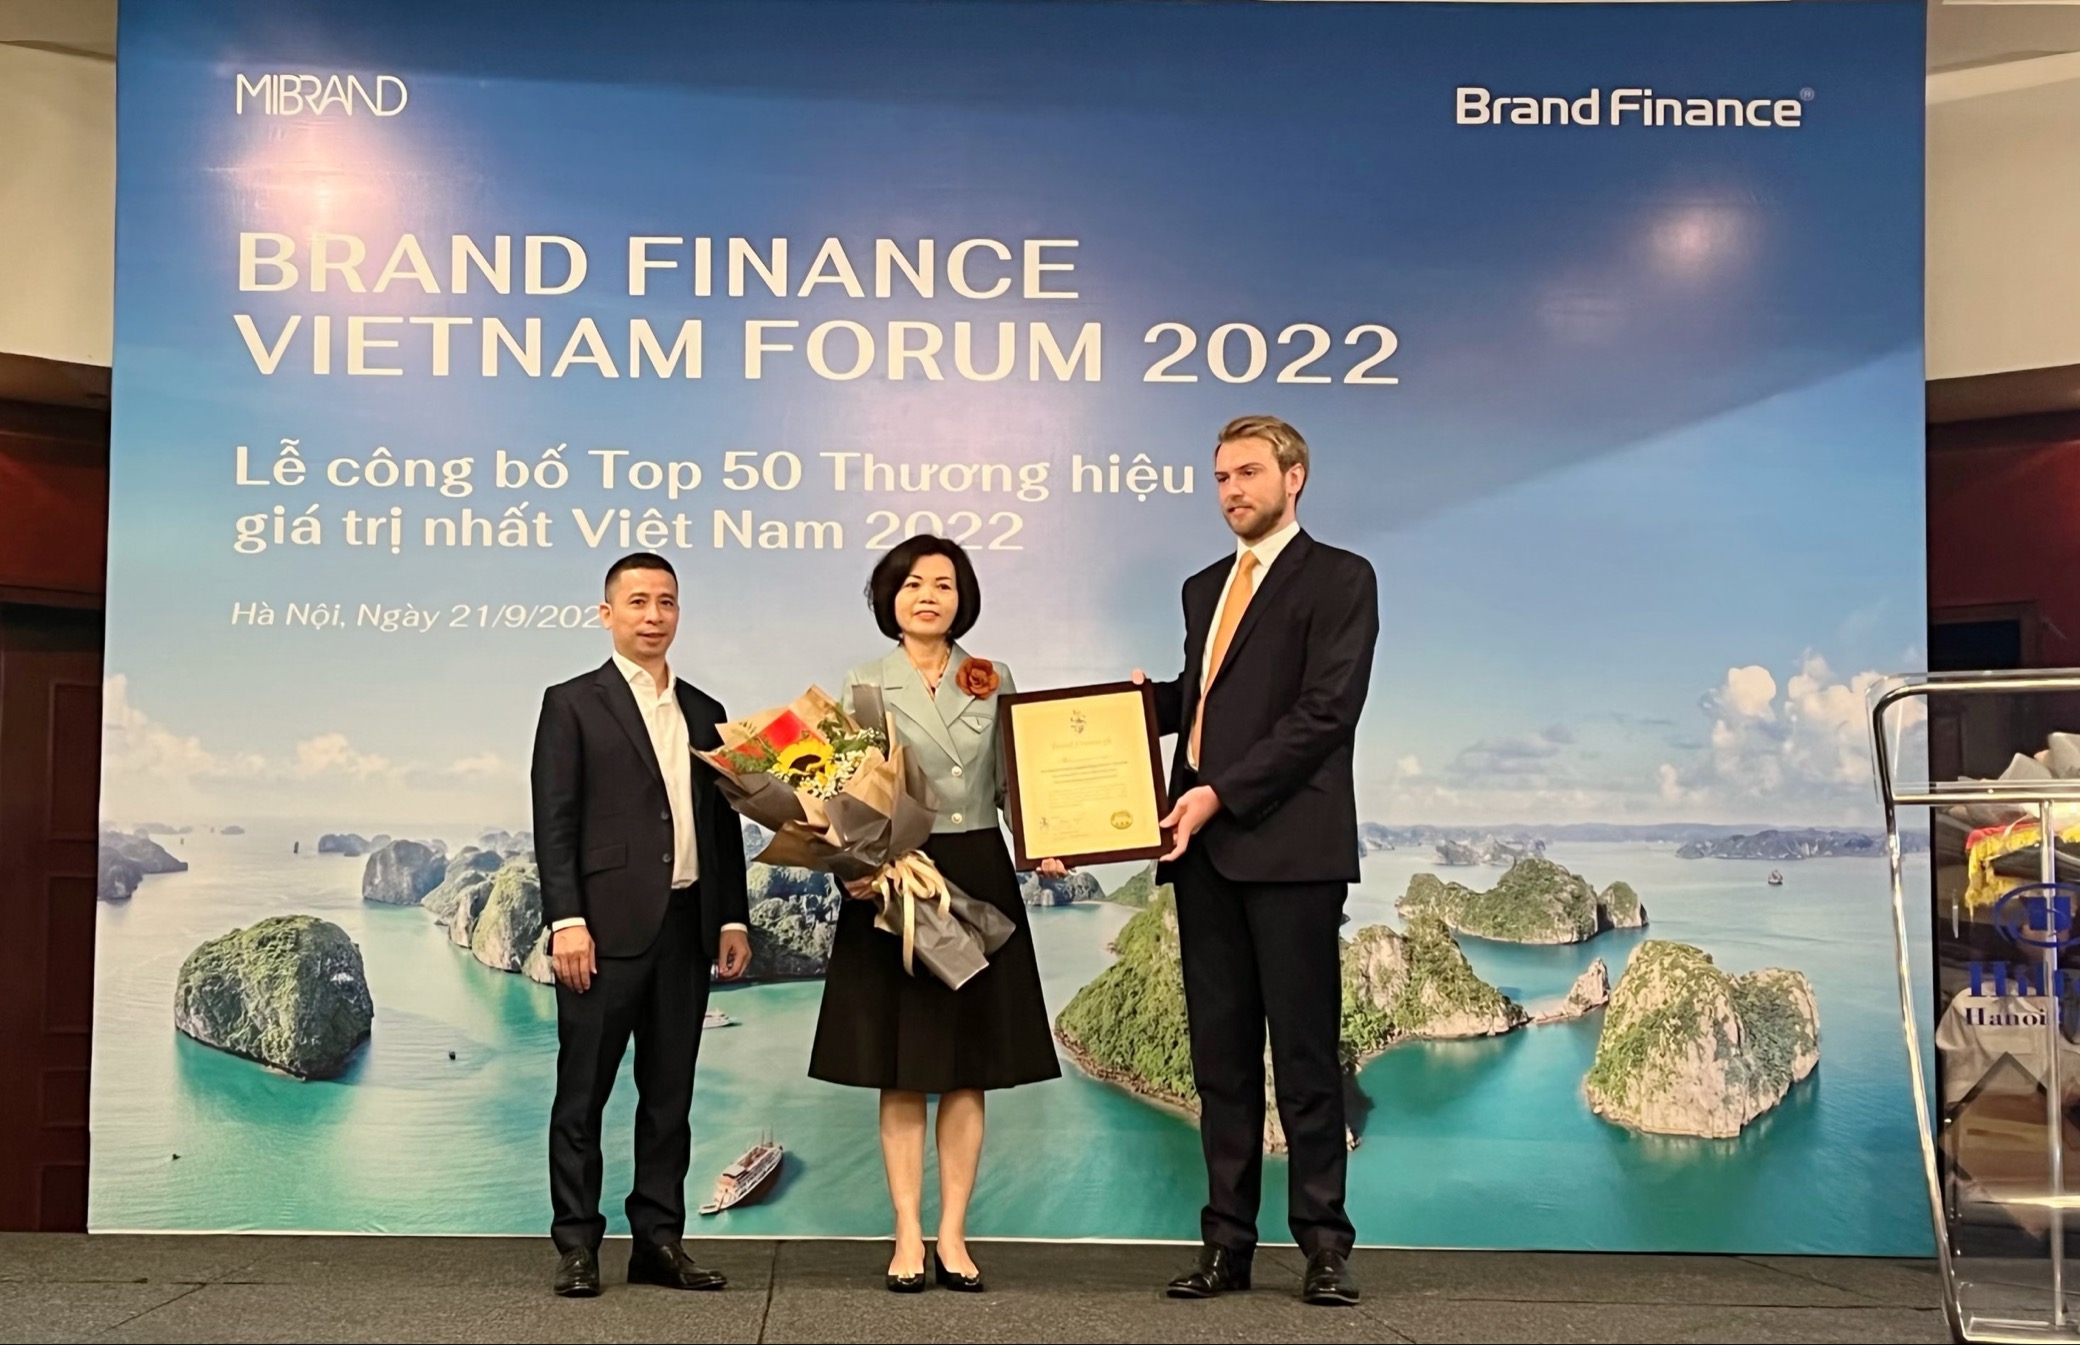 Đại diện Brand Finance trao chứng nhận “Vinamilk - Thương hiệu sữa lớn thứ 6

thế giới” cho Bà Bùi Thị Hương – Giám đốc Điều hành Vinamilk